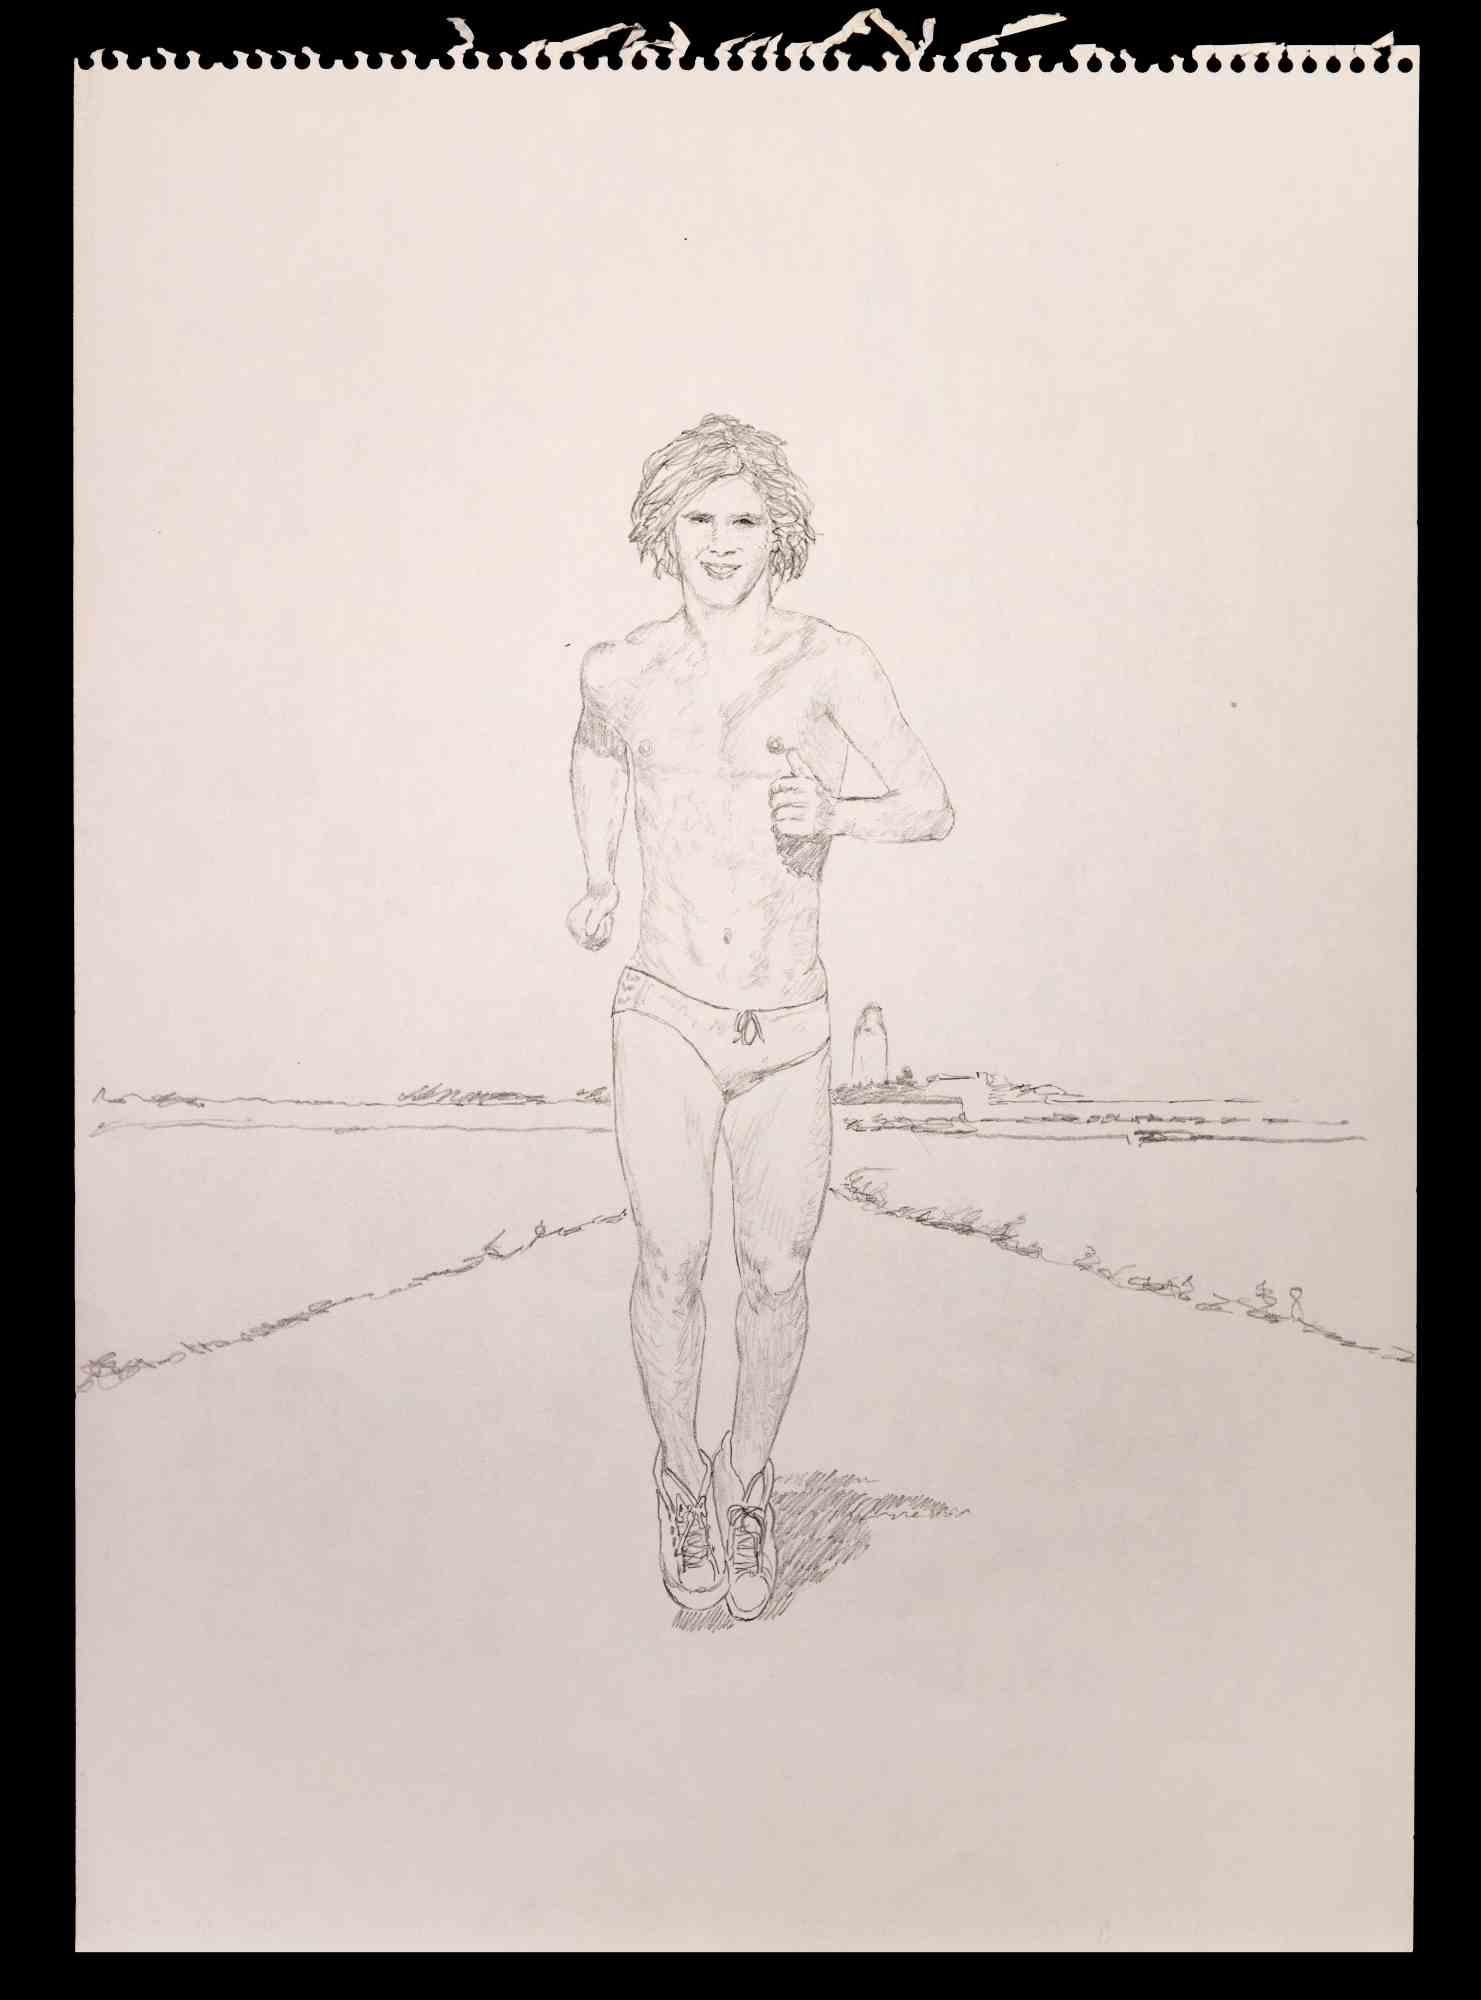 The Running Man est un dessin original au crayon réalisé par Anthony Roaland.

L'œuvre d'art représente un nu masculin frais et beau. Derrière, le paysage est dépeint avec des lignes simples et essentielles.

Bonnes conditions.